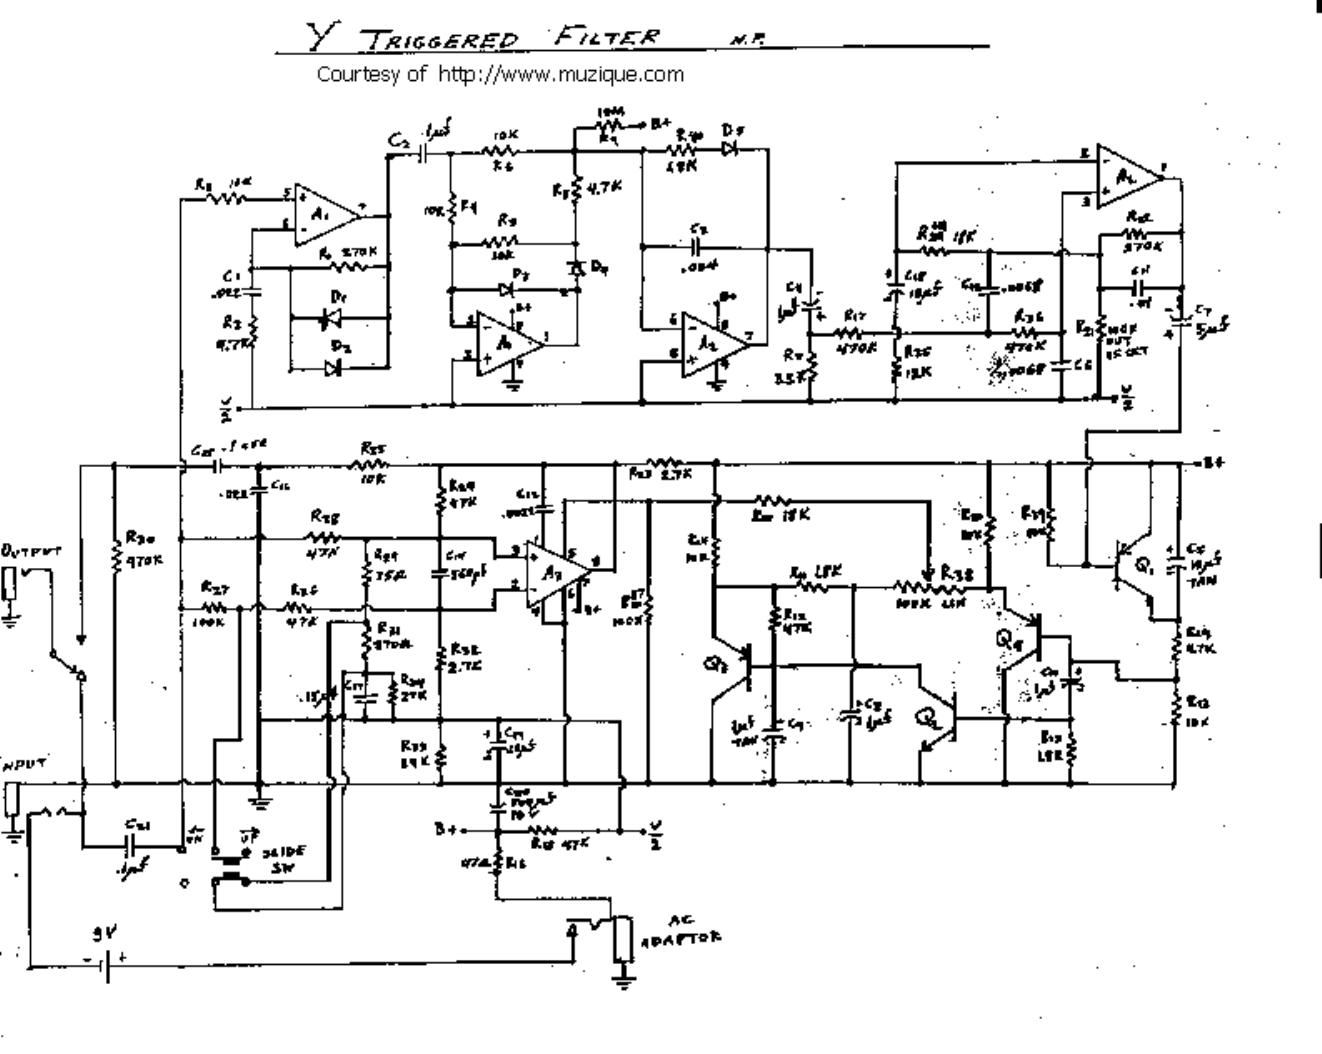 electro harmonix y triggered filter schematic